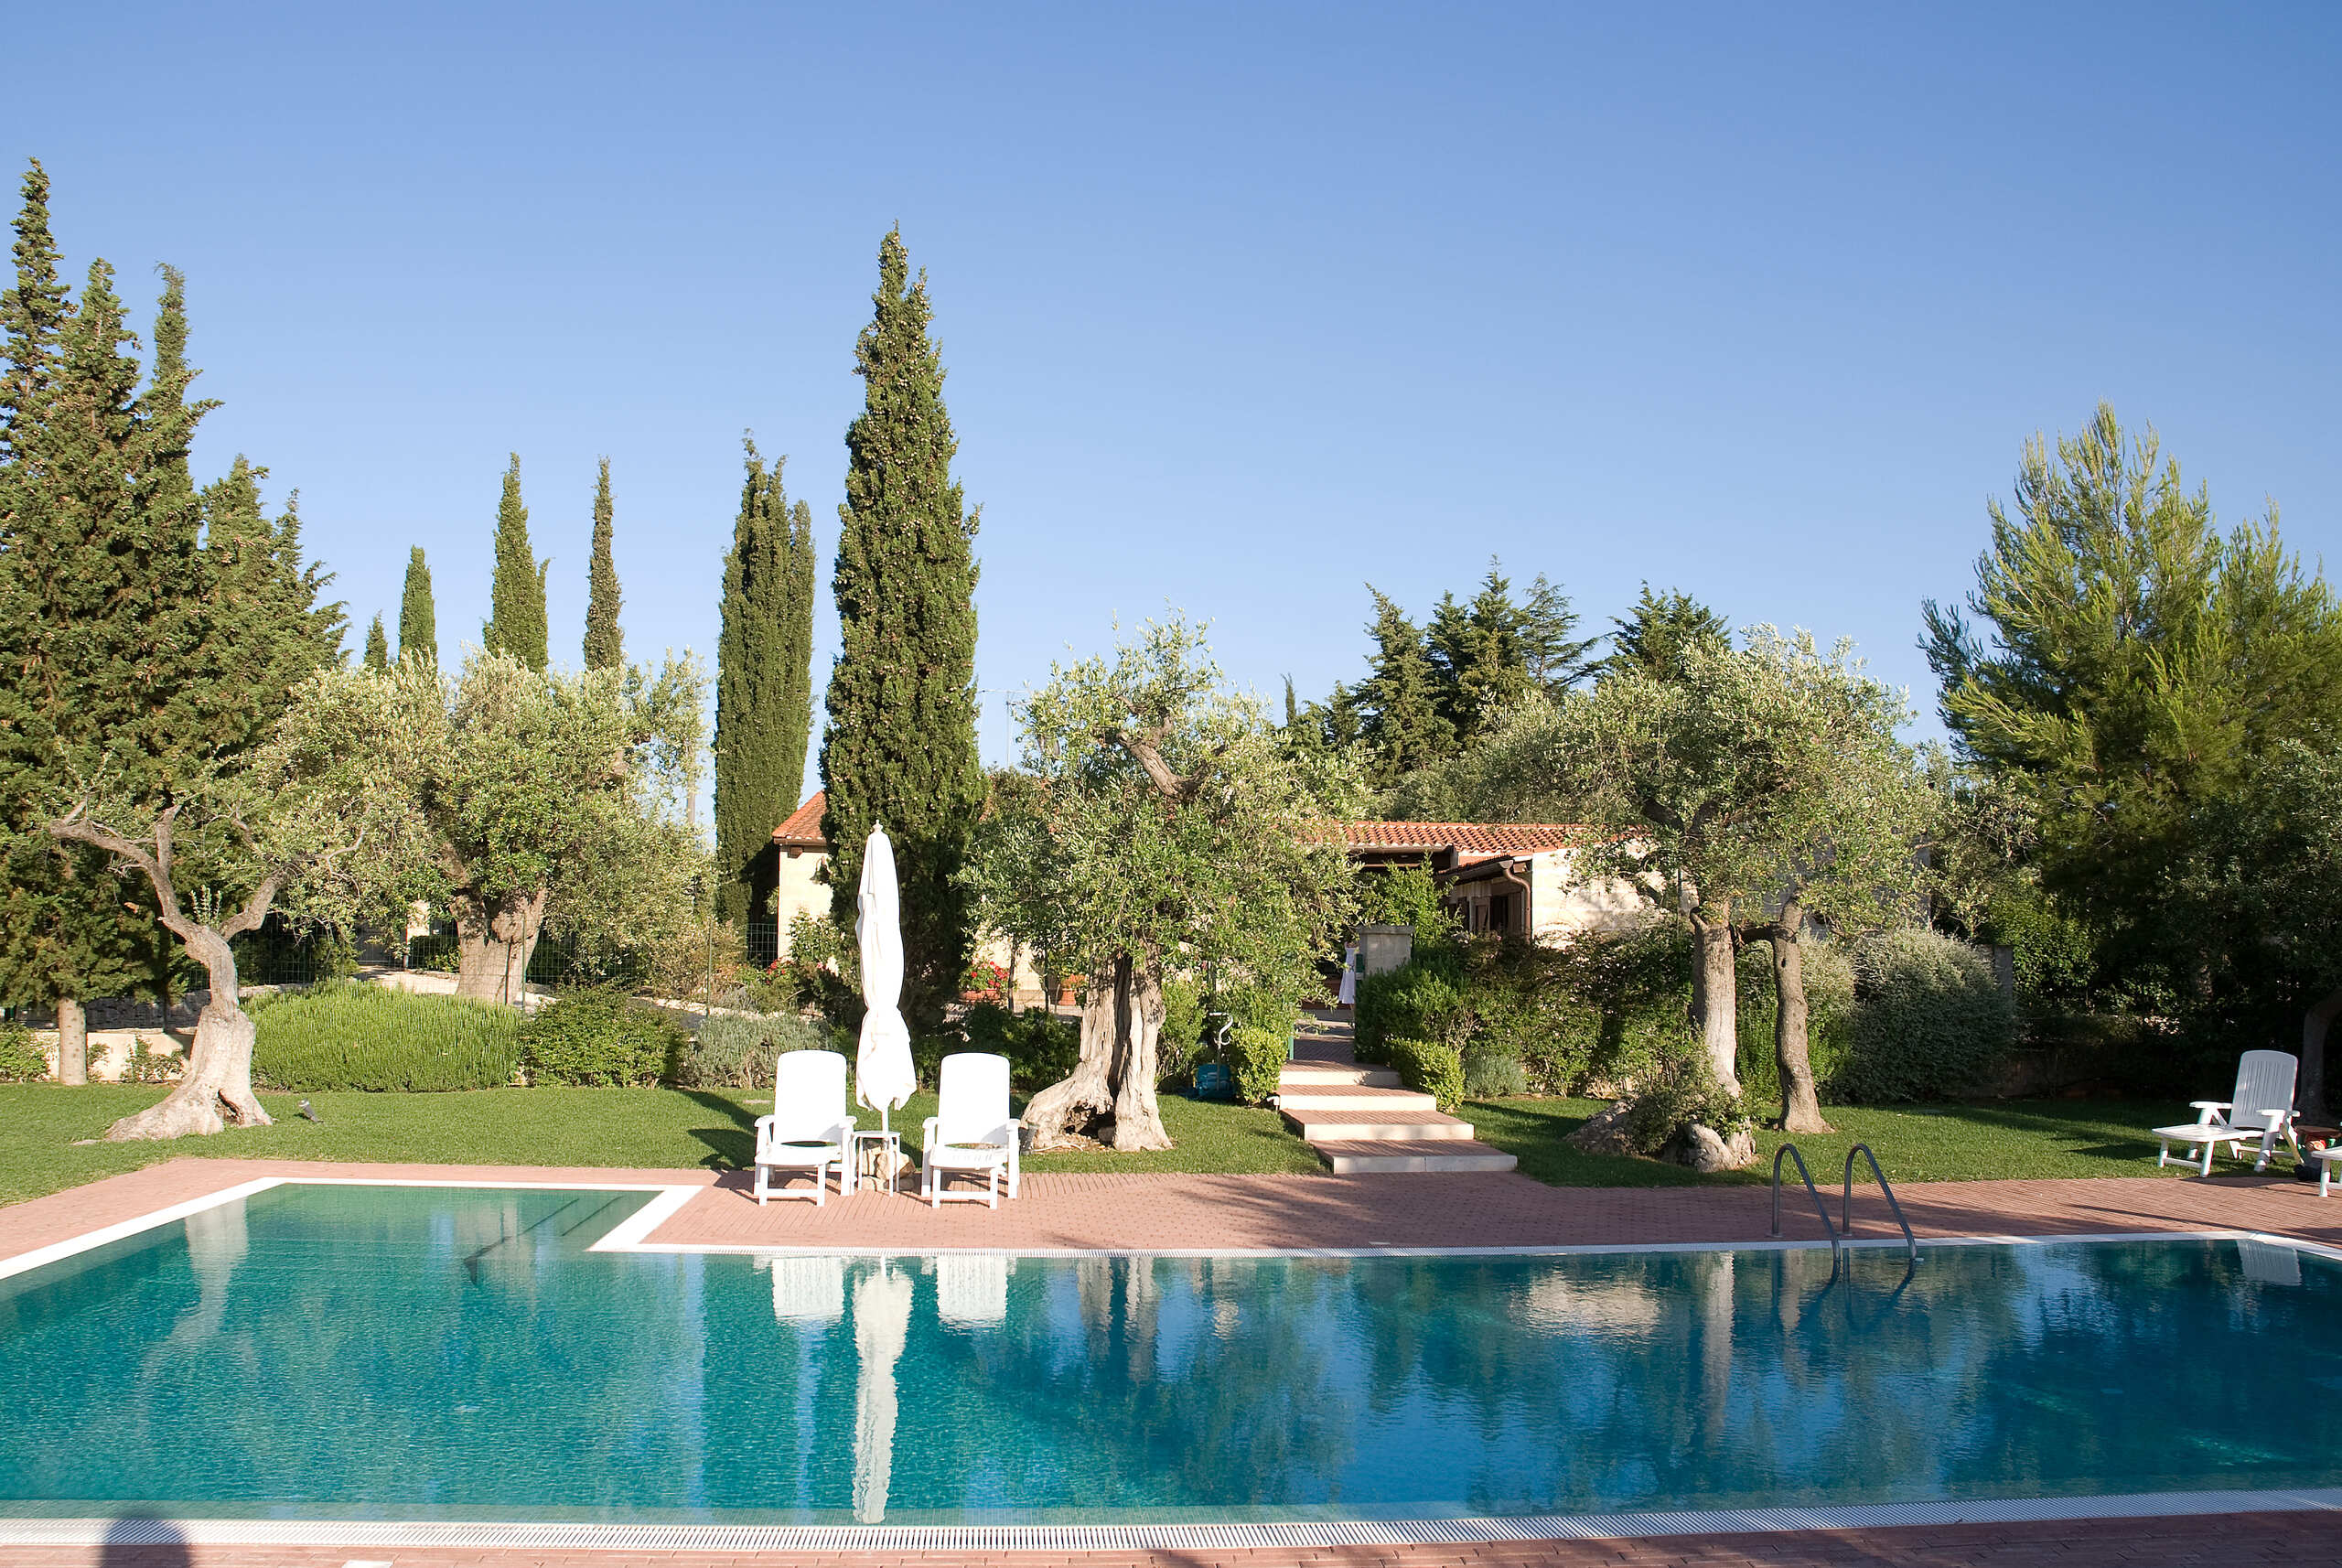 A vendre villa in zone tranquille Conversano Puglia